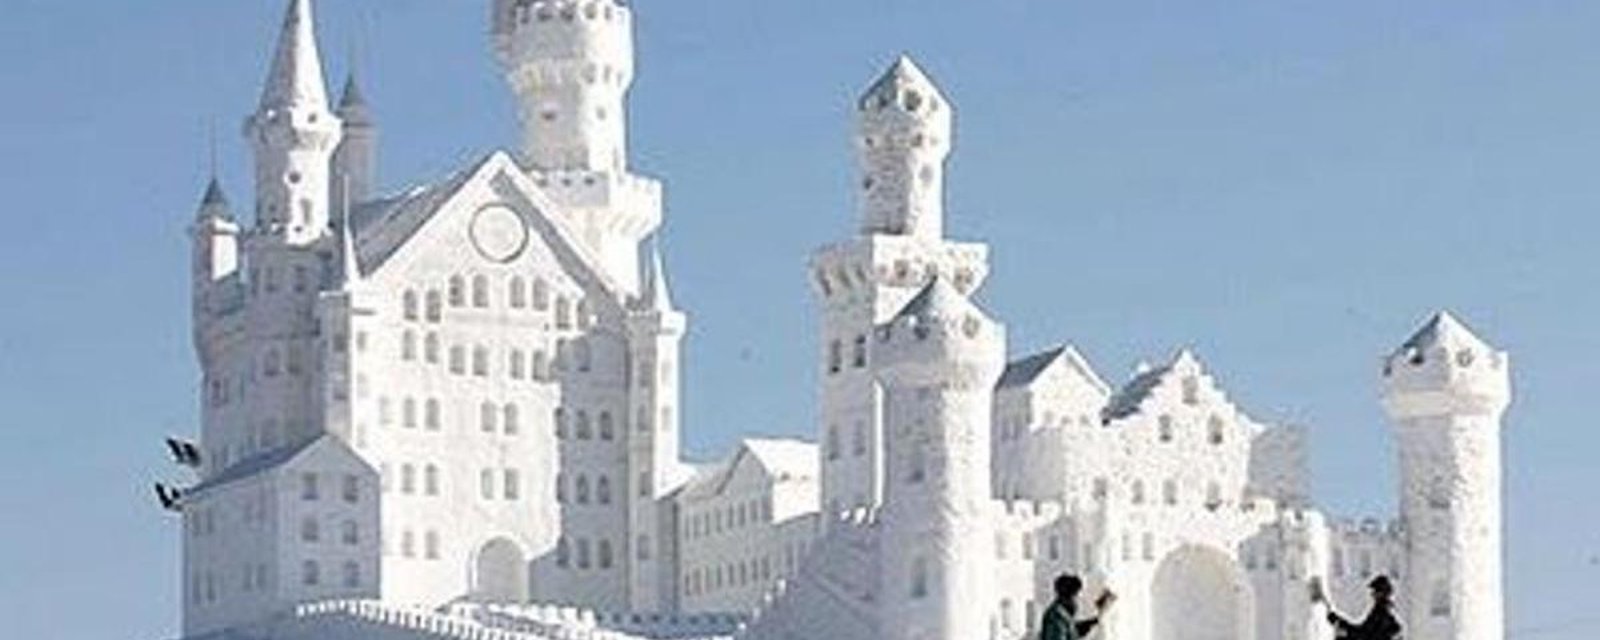 20 châteaux de neige et de glace plus fabuleux les uns que les autres